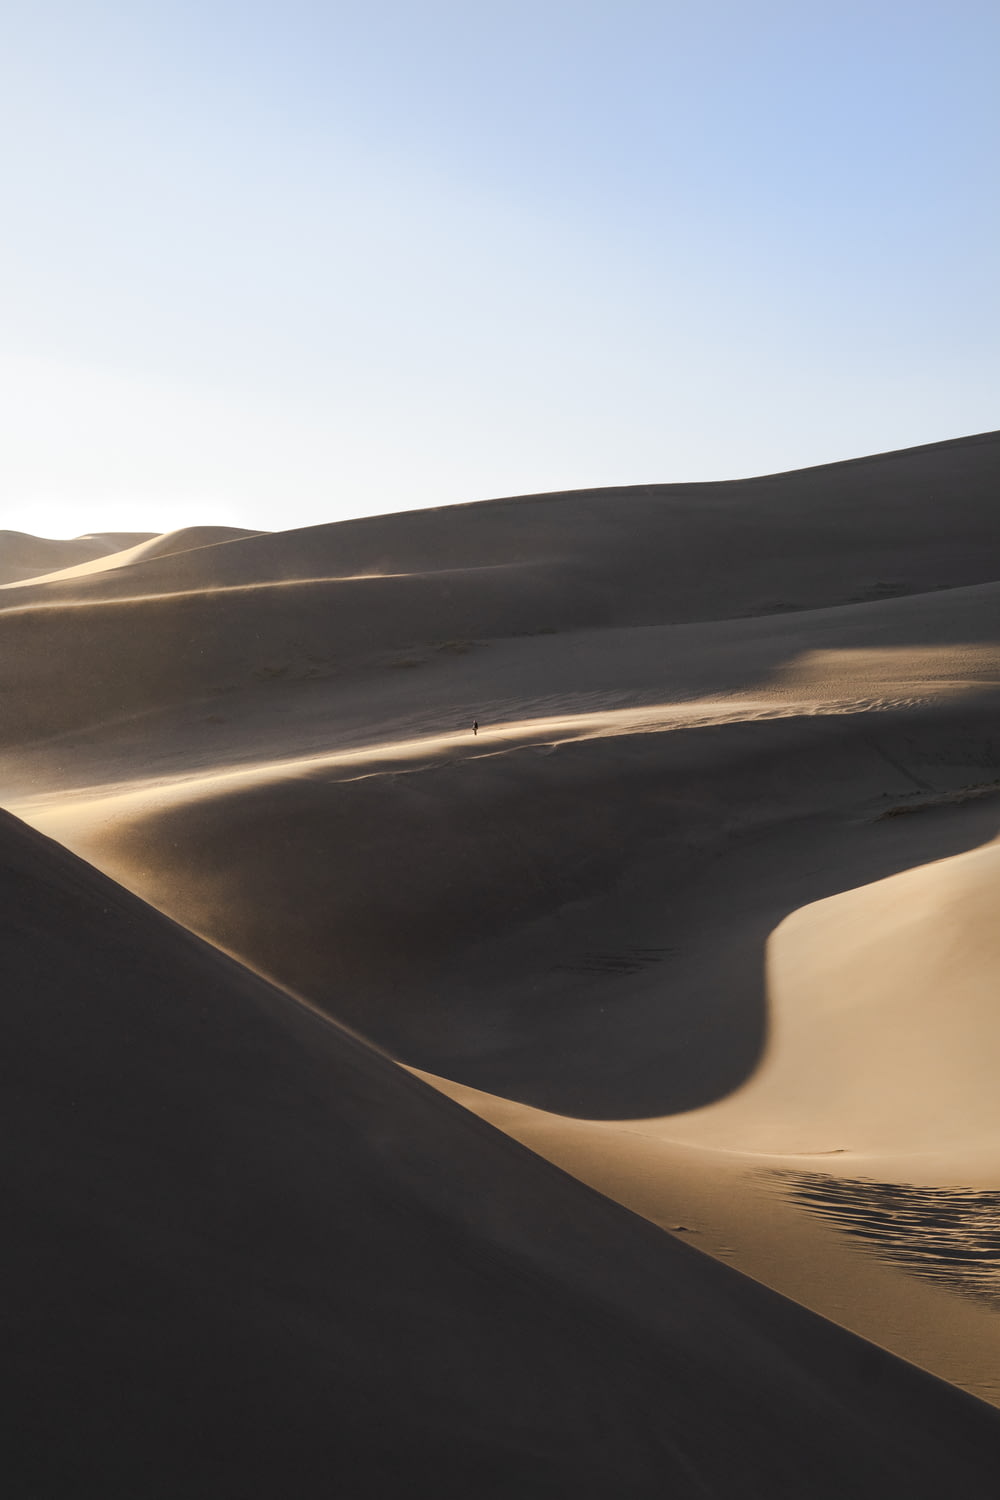 landscsape photography of desert field